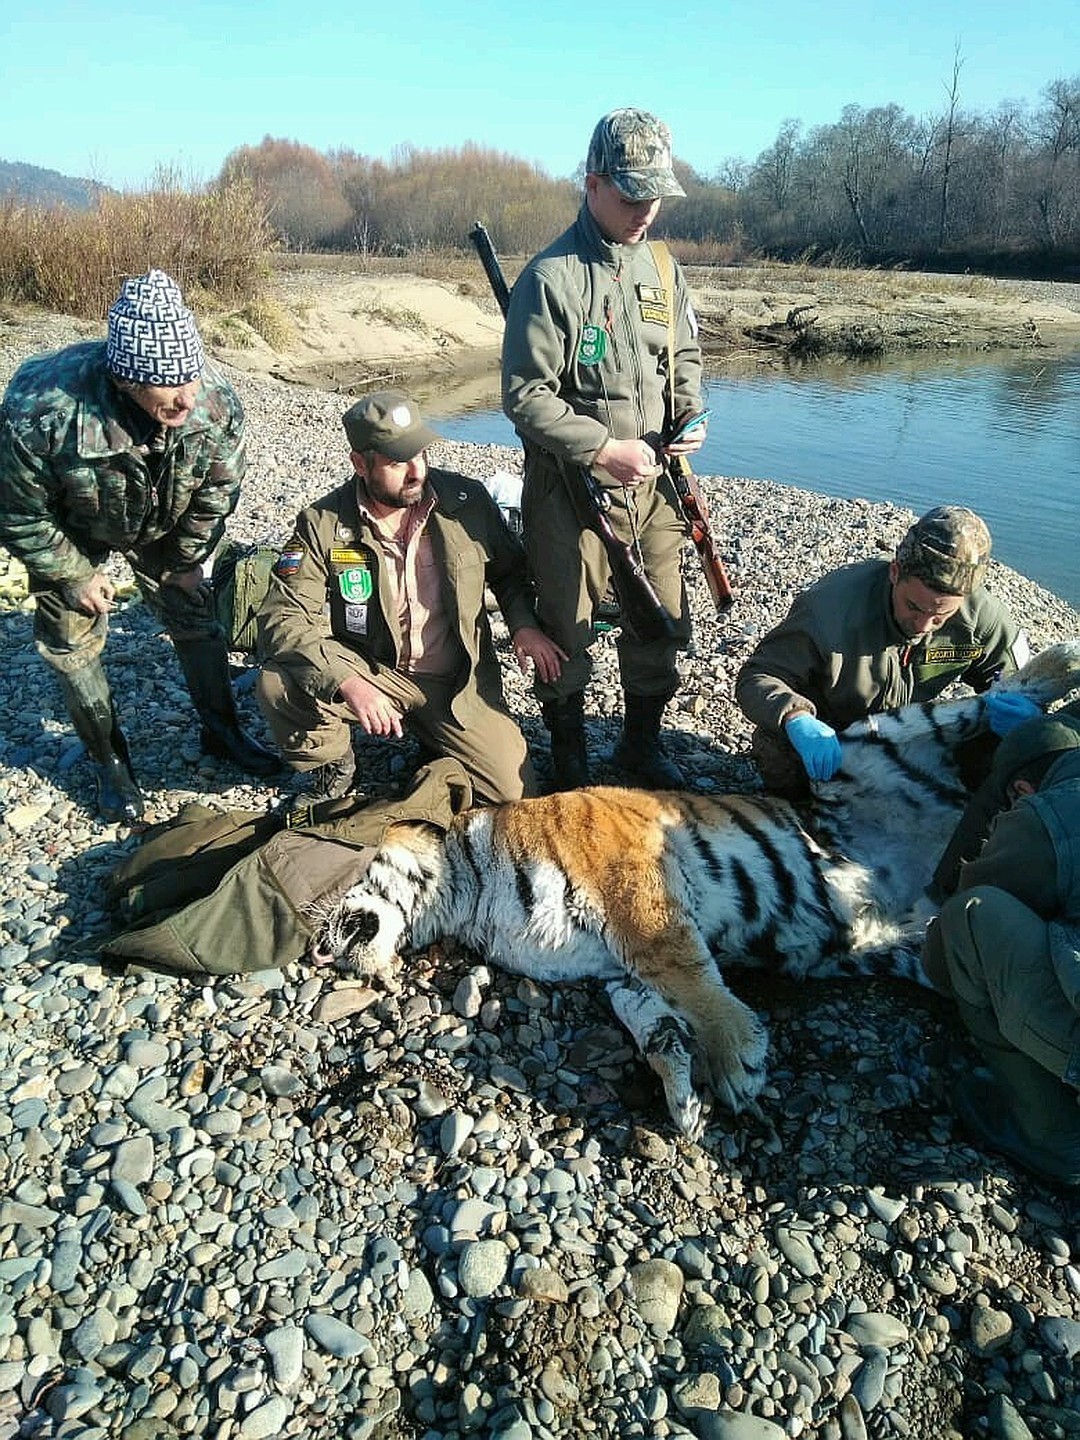 Меланхоличный тигр вызвал переполох на границе Приморского и Хабаровского краев